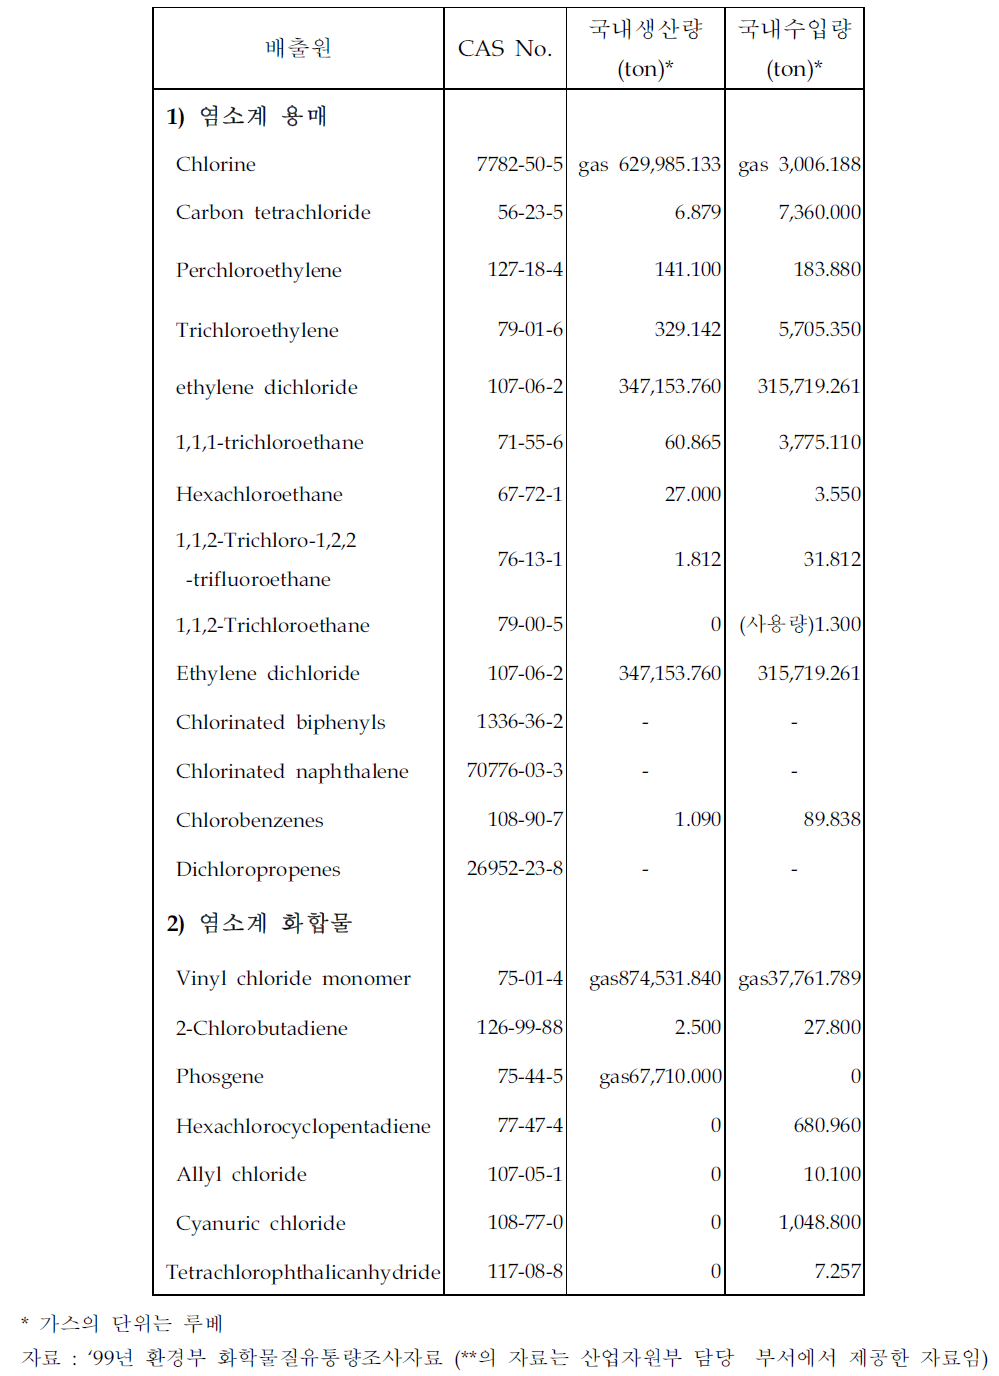 국내 HCB 배출원별 원료물질의 생산량/수입량